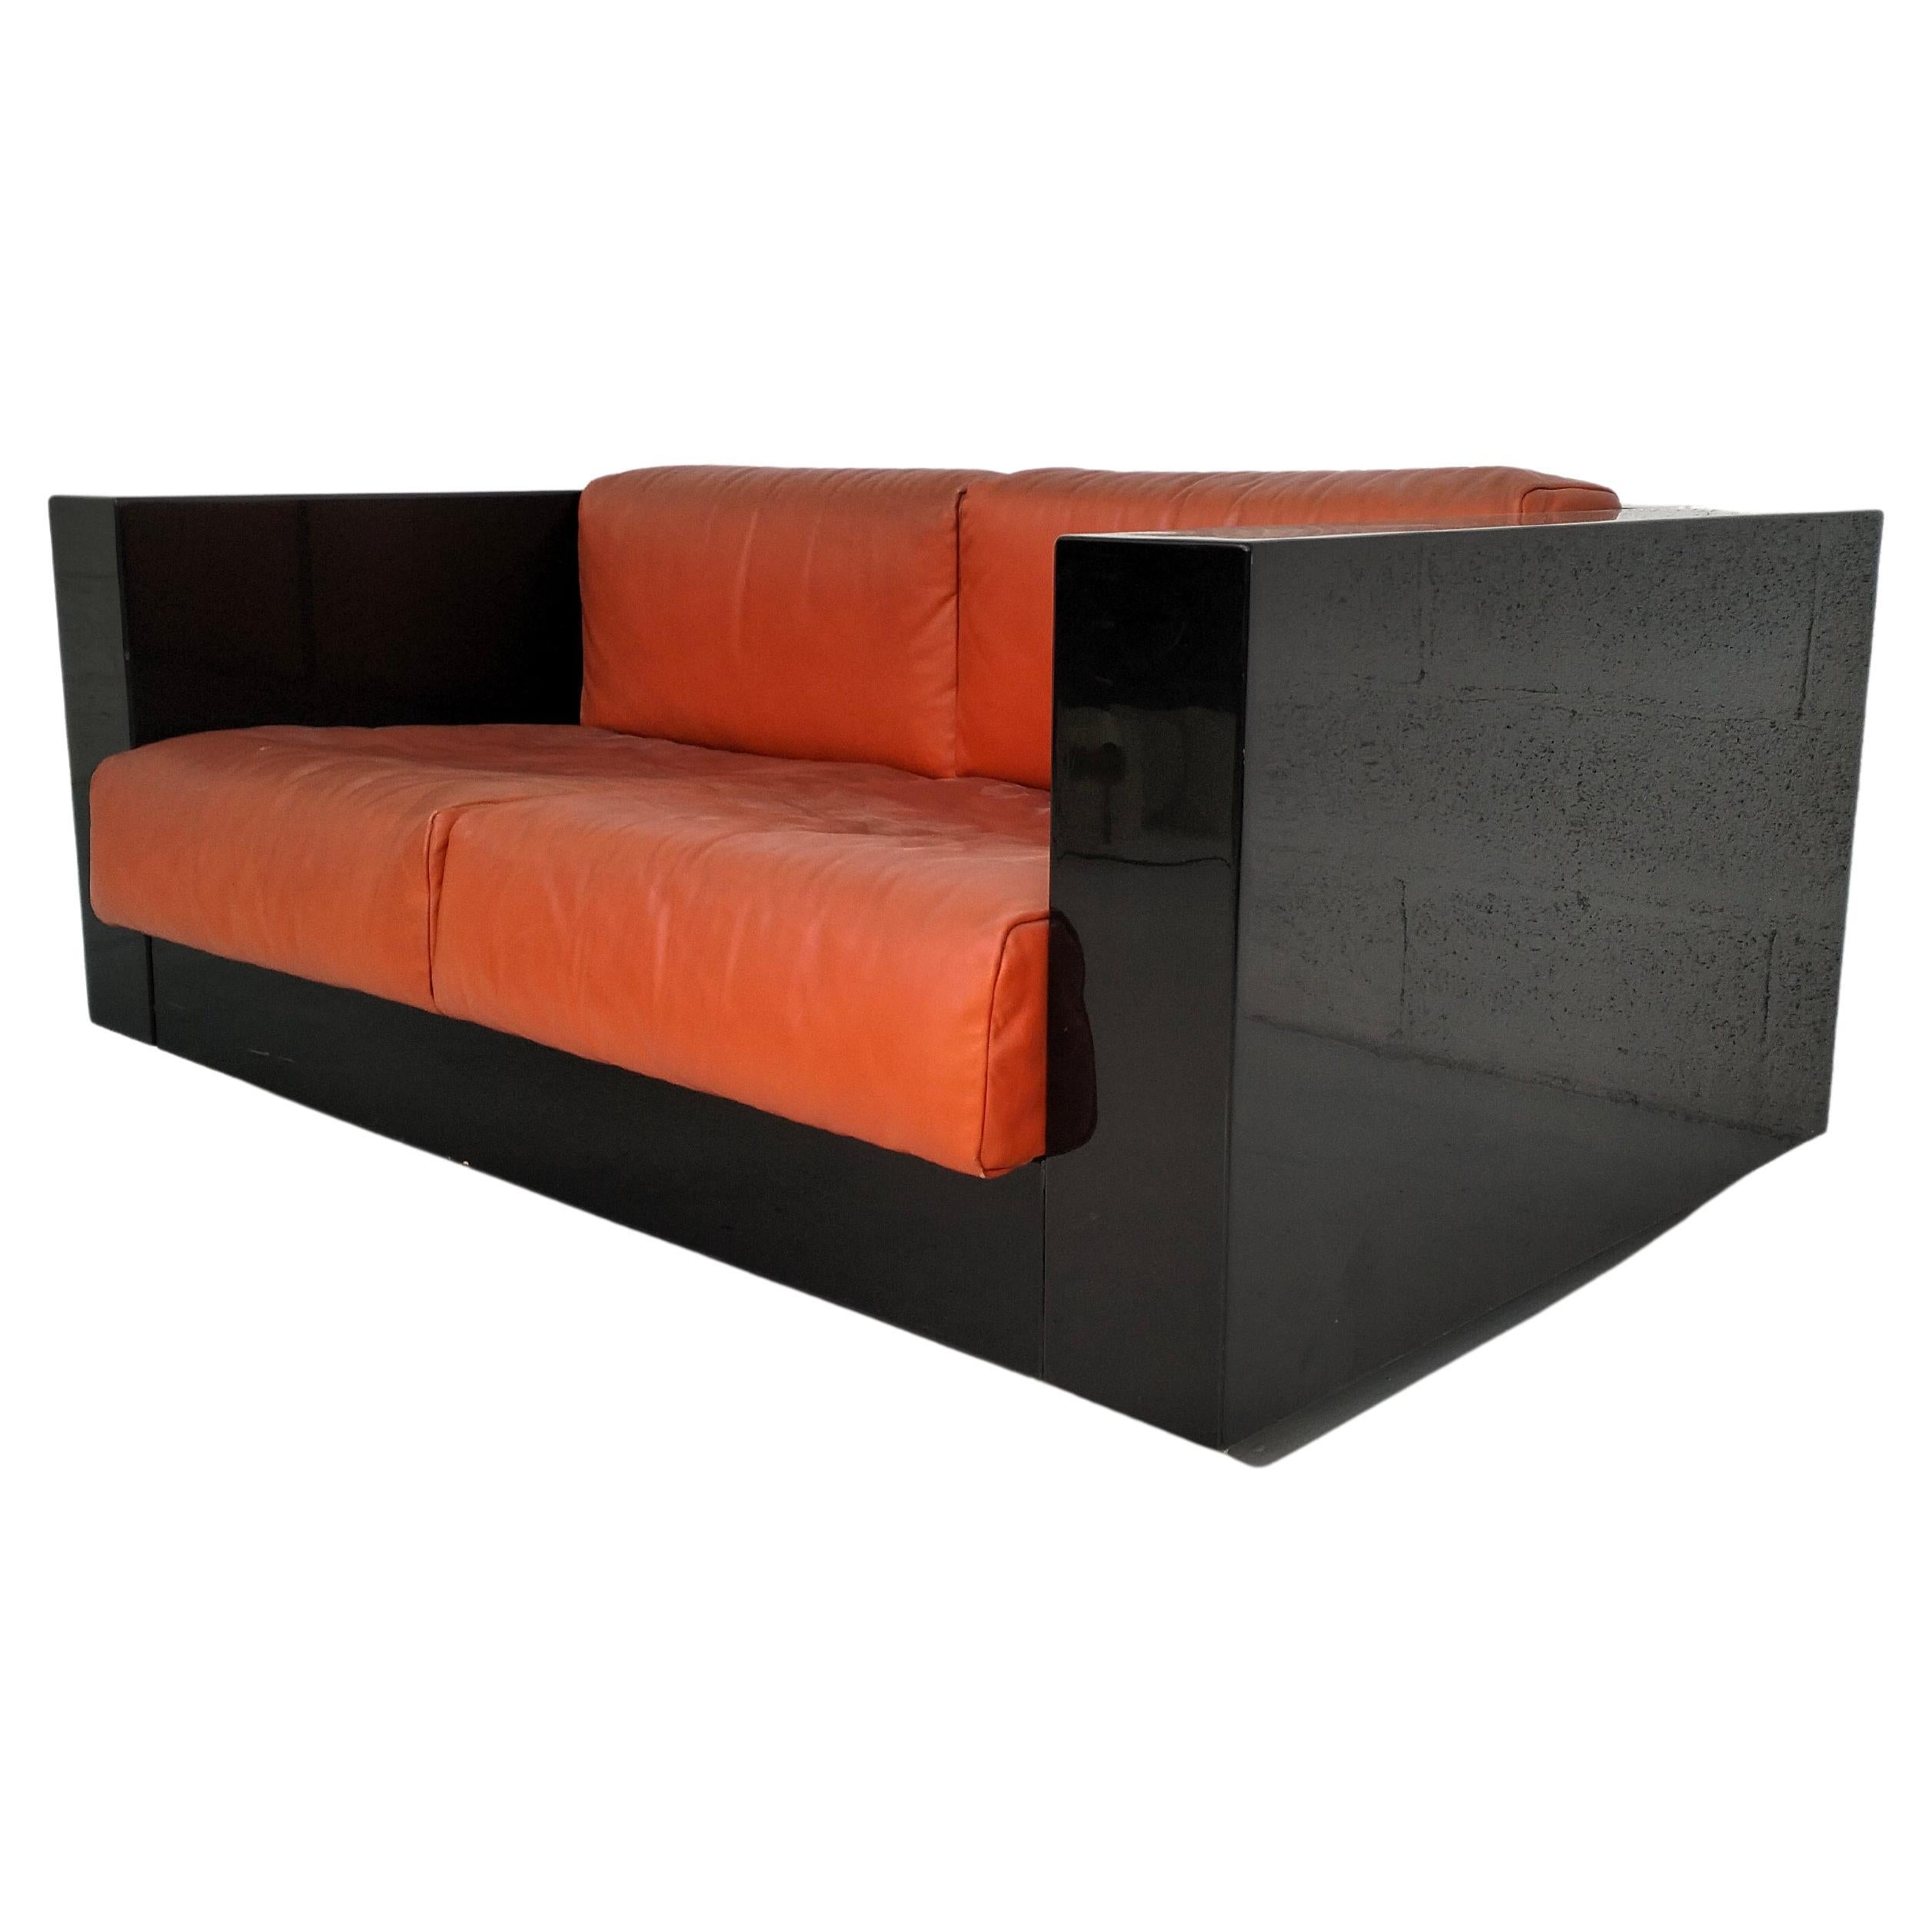 Black “Saratoga” sofa by Massimo and Lella Vignelli for Poltronova 60s, 70s